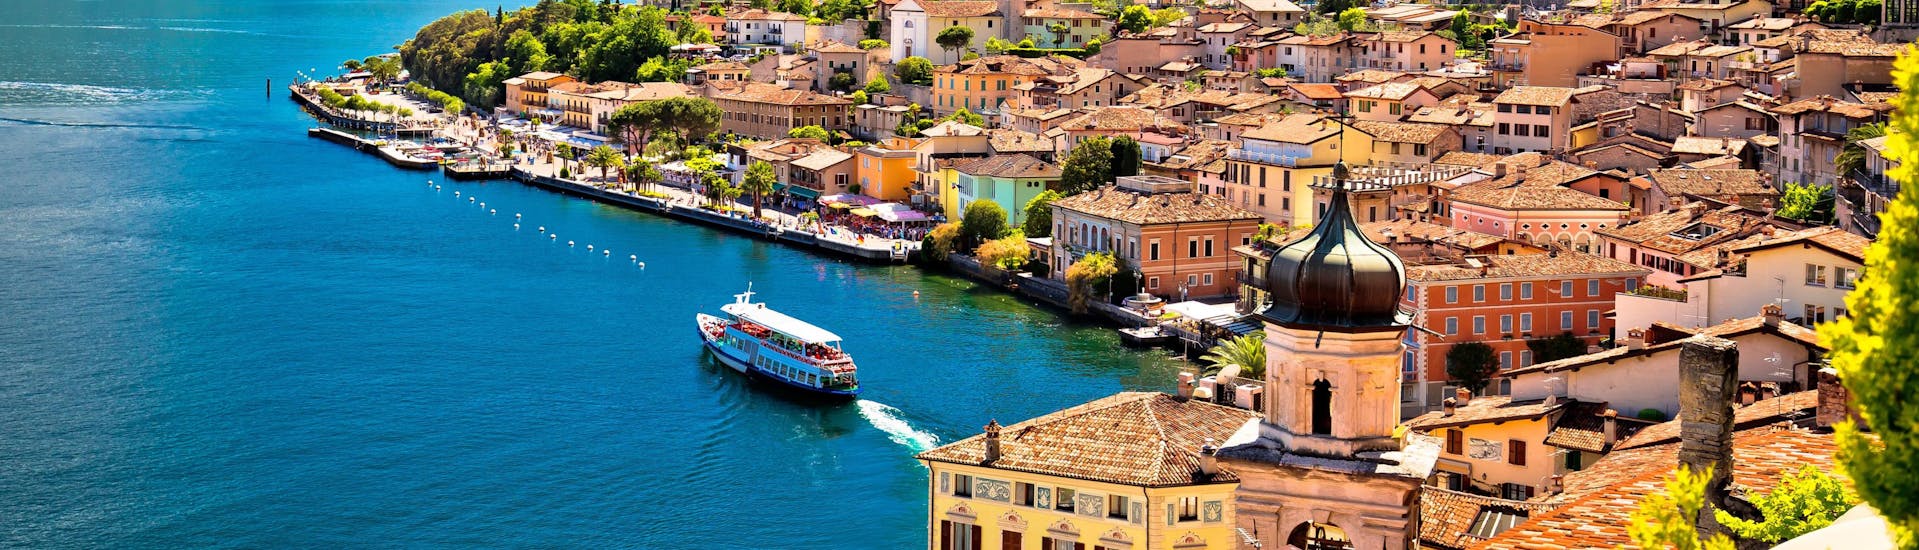 Die Stadt Limone sul Garda am Gardasee, wo Sie online Bootsfahrten buchen können.